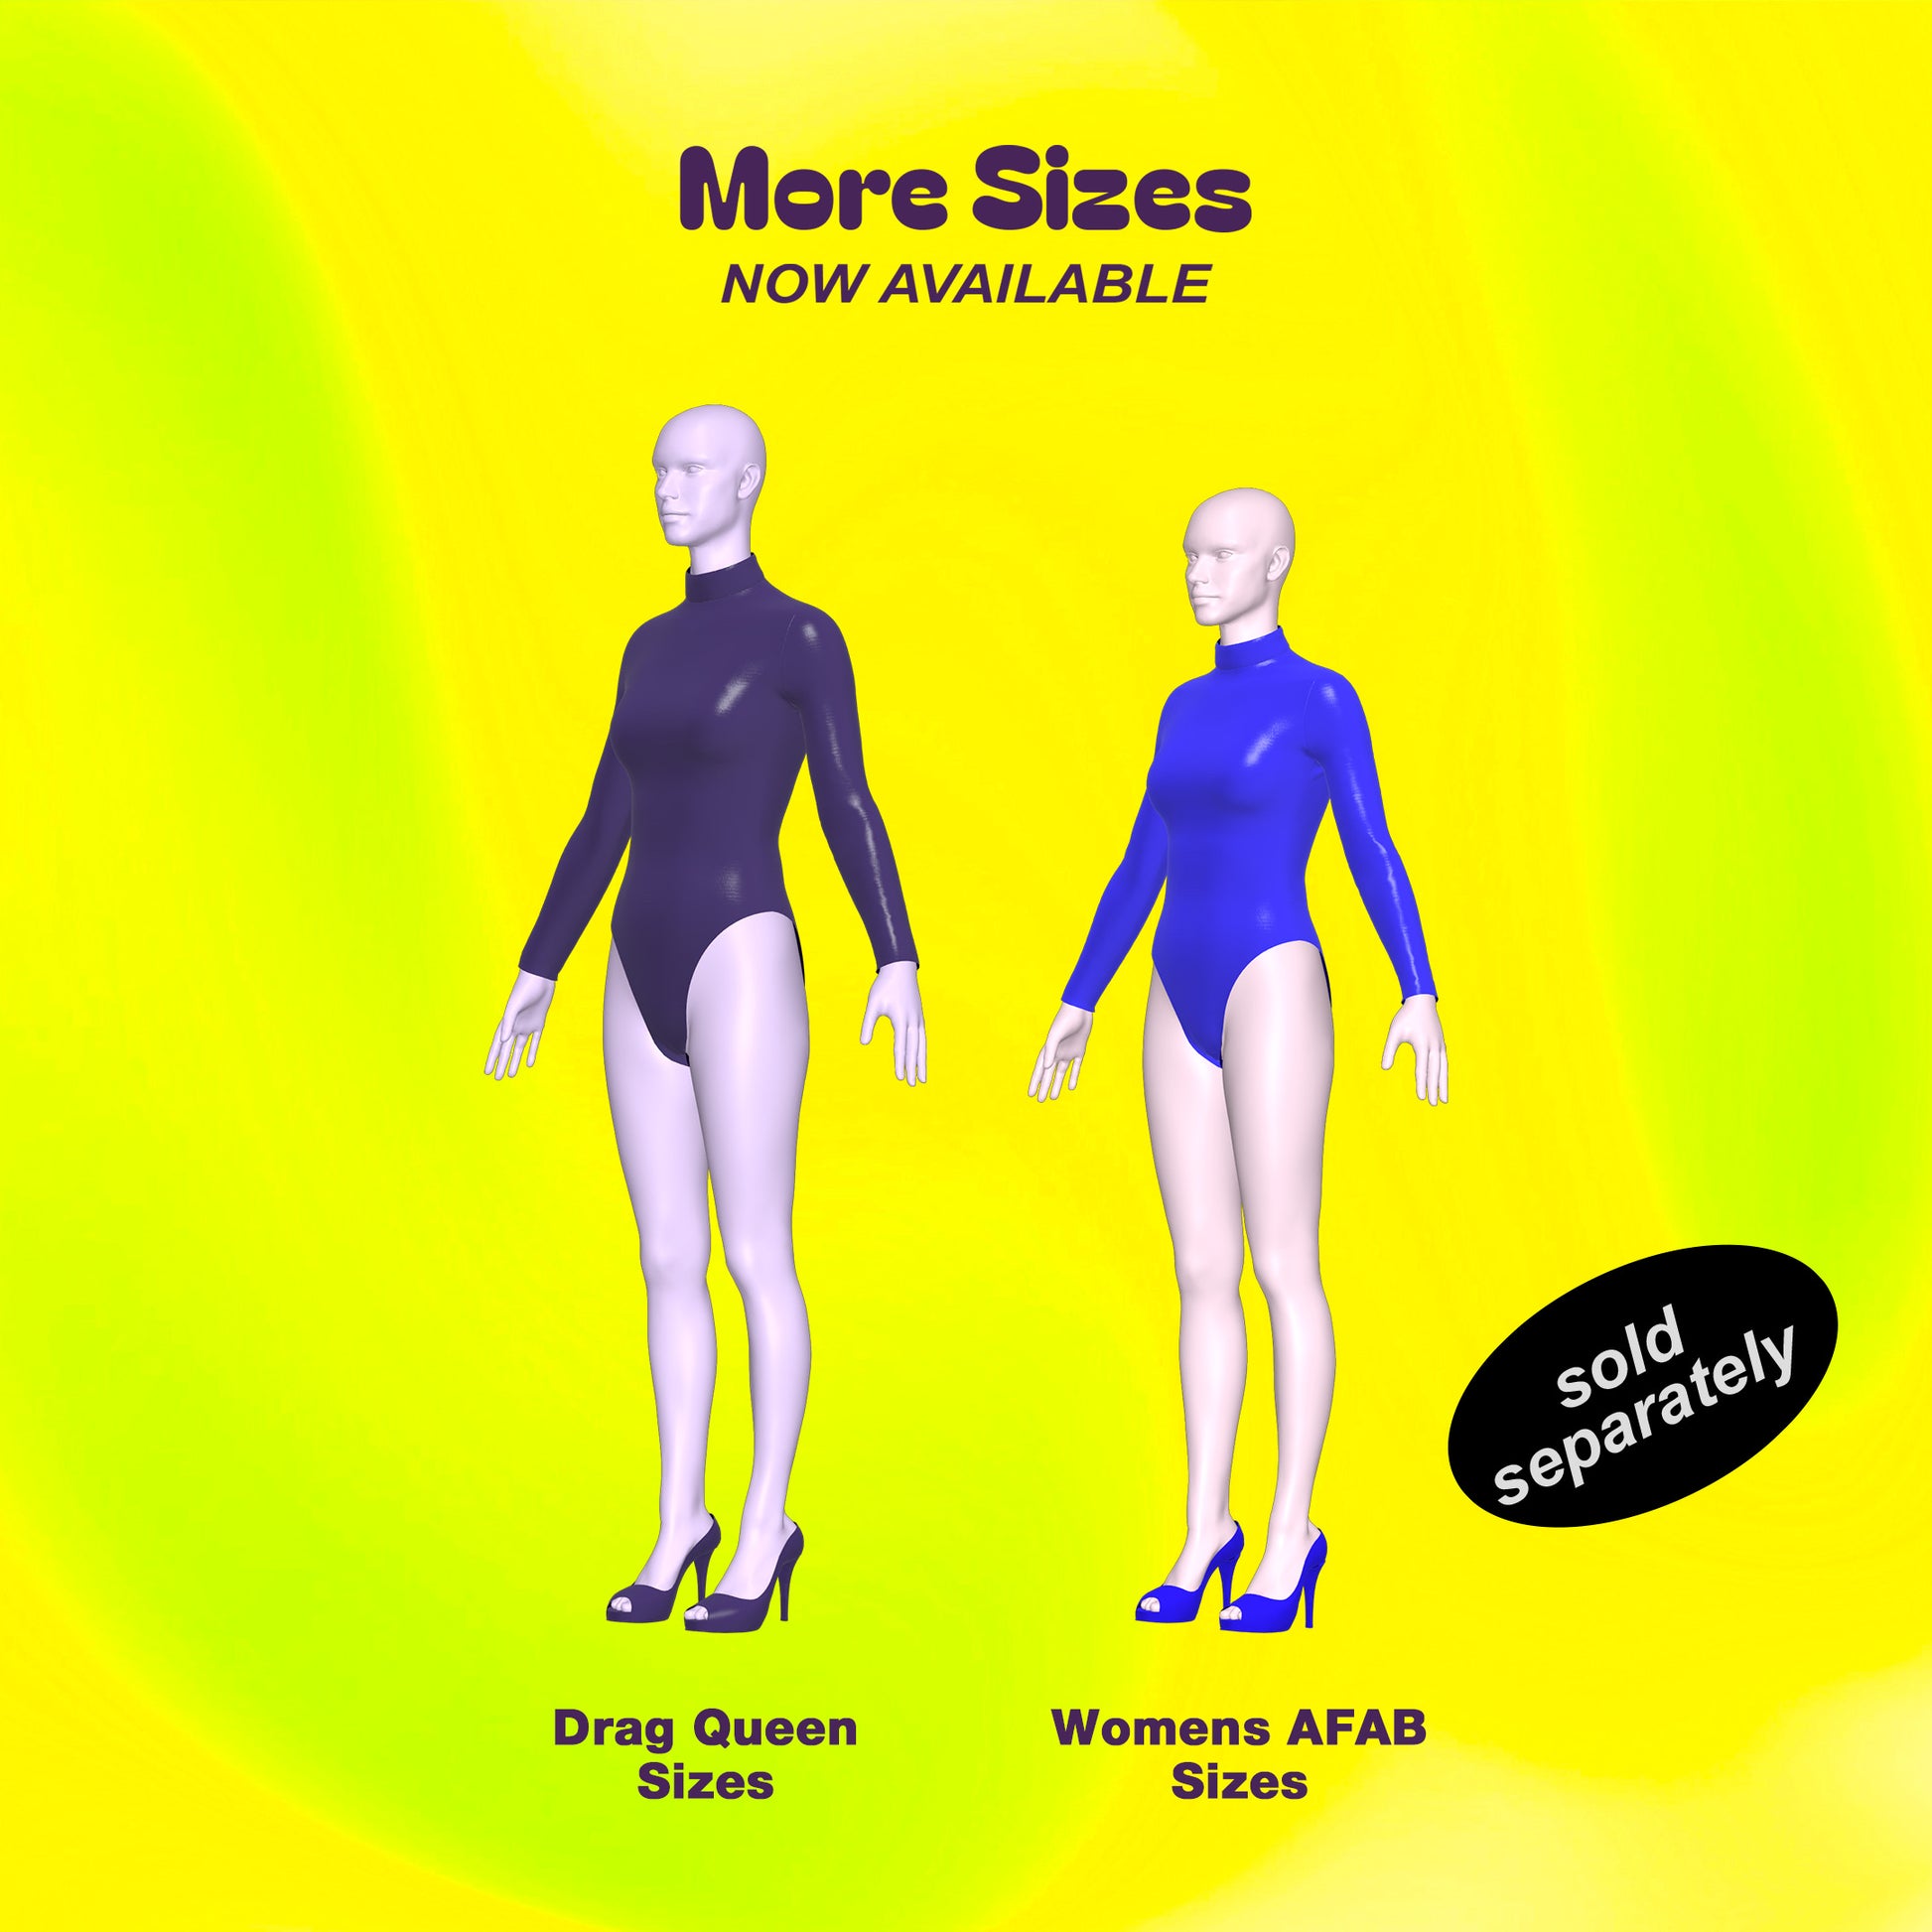 Stretch Colorblock Set Bodysuit & Leggings Sewing Pattern (Sizes XS-4X) PDF  – Katkow